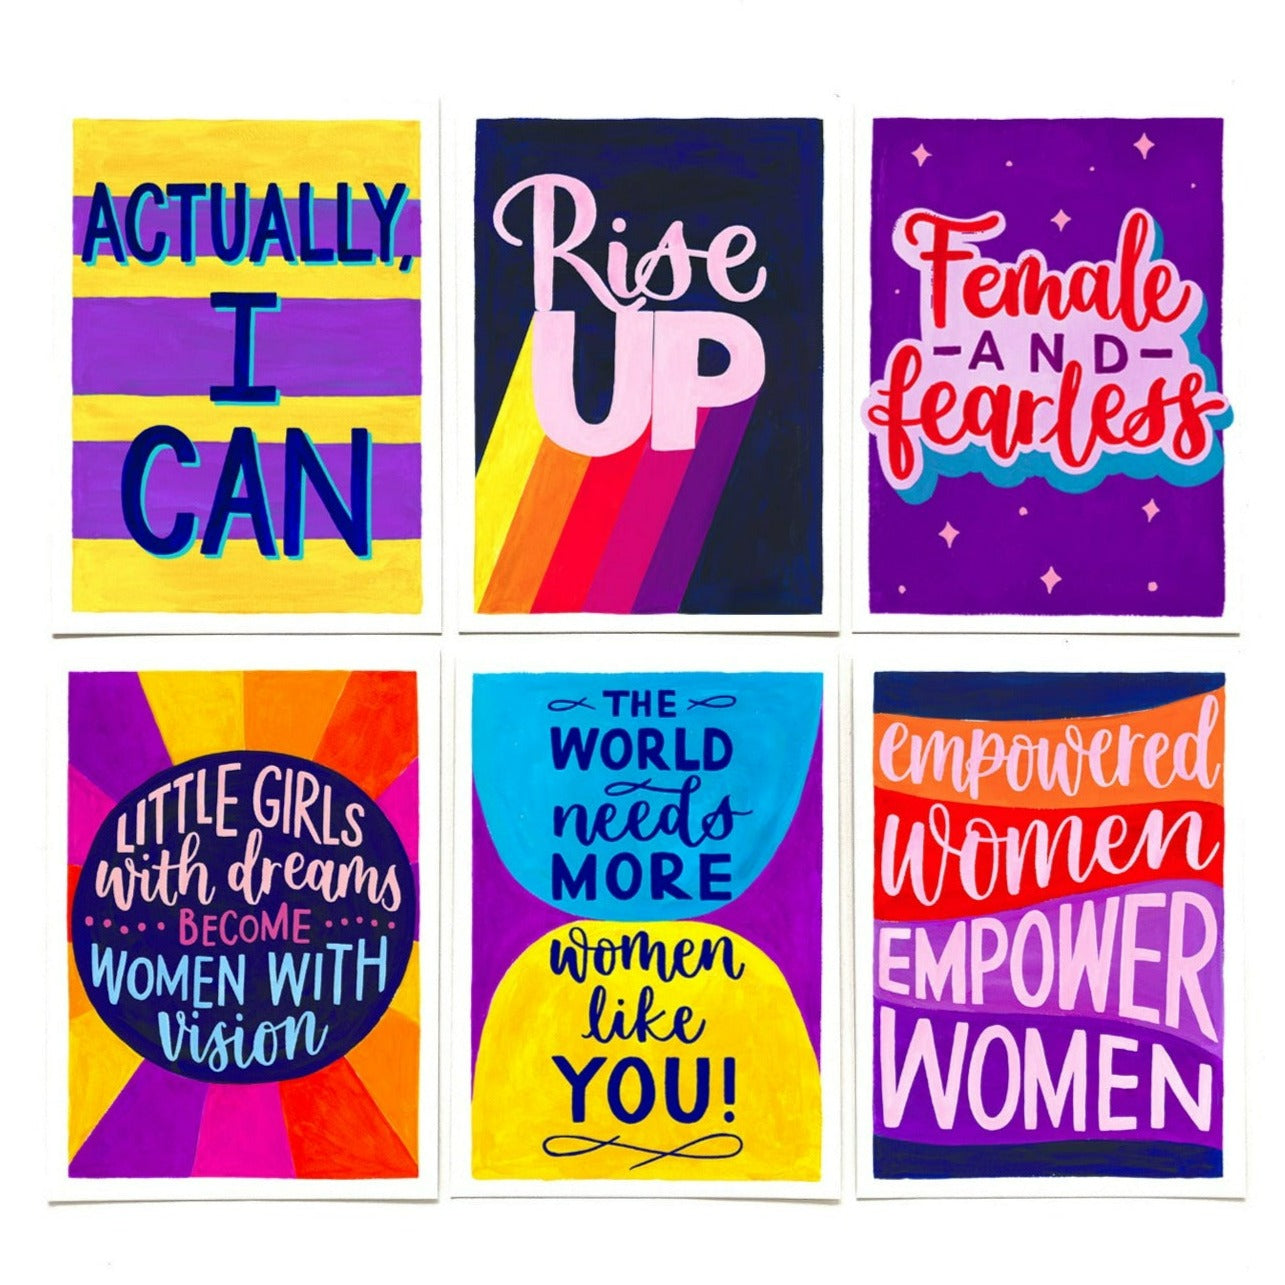 Empower Women (Postcard)